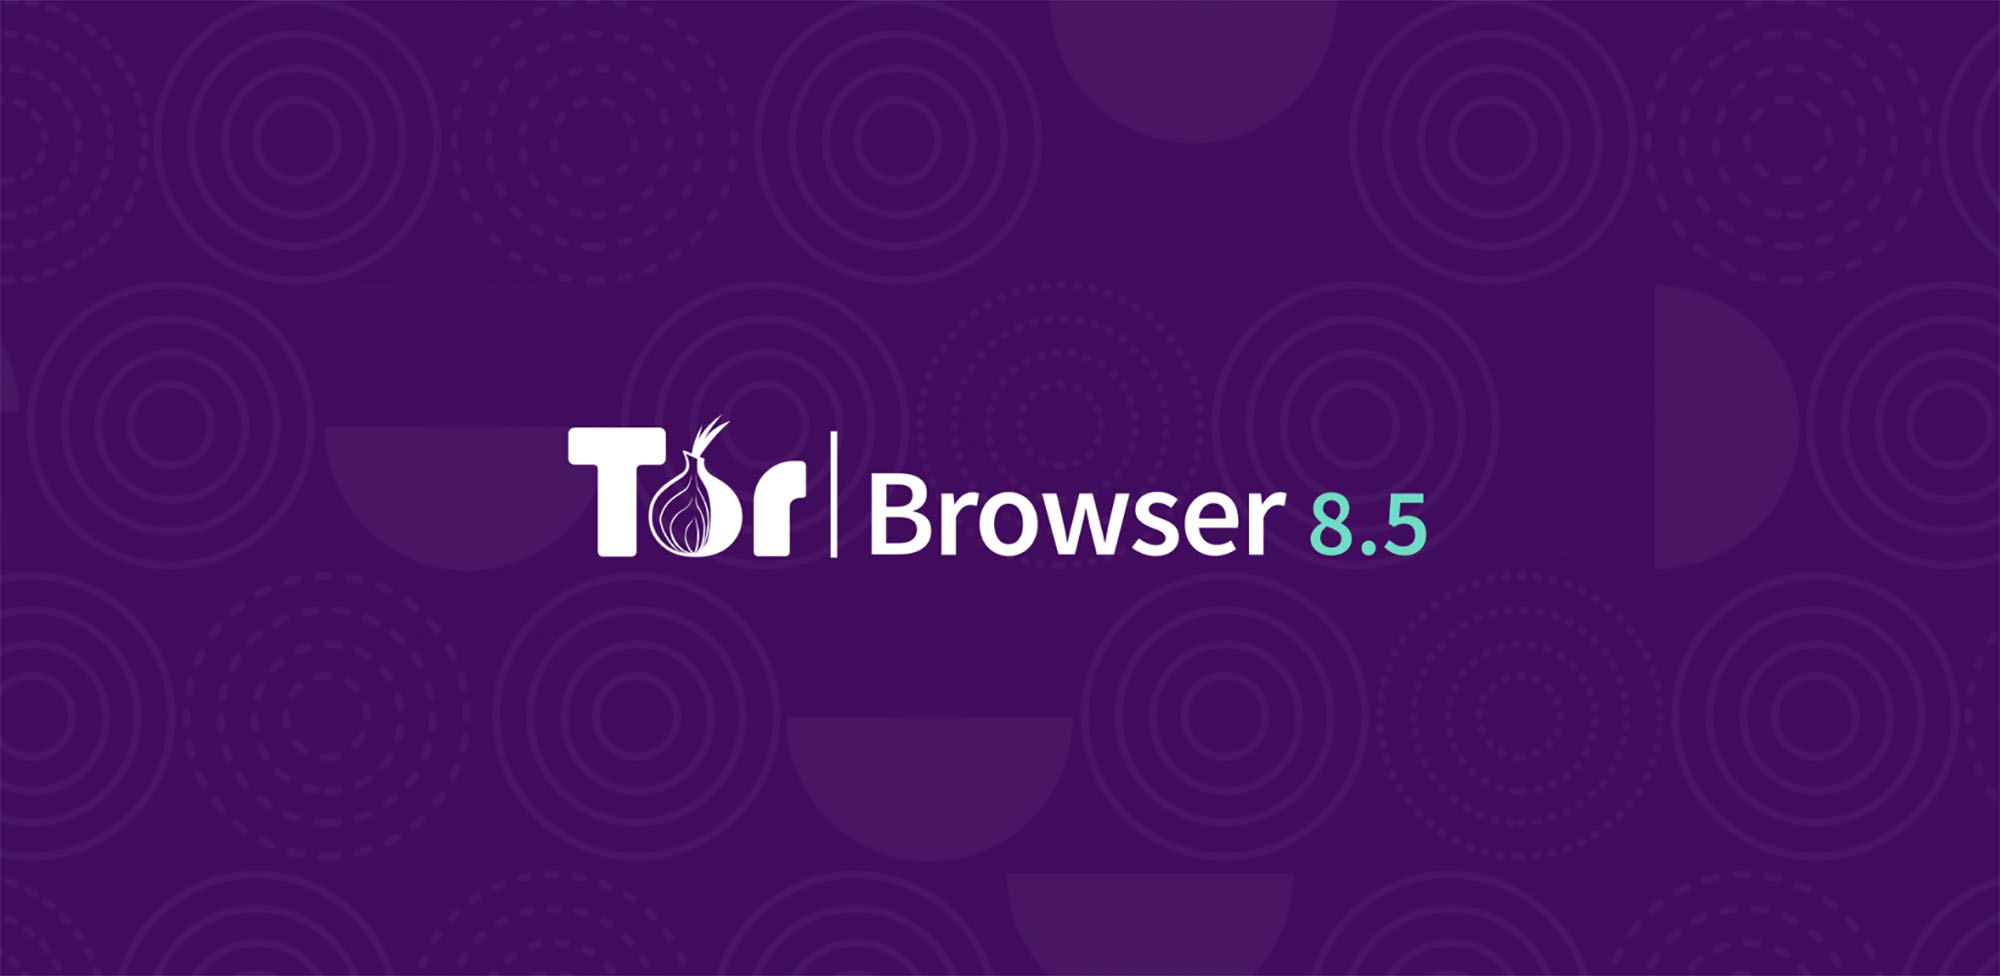 Tor browser 24 mega habib or darknet mega